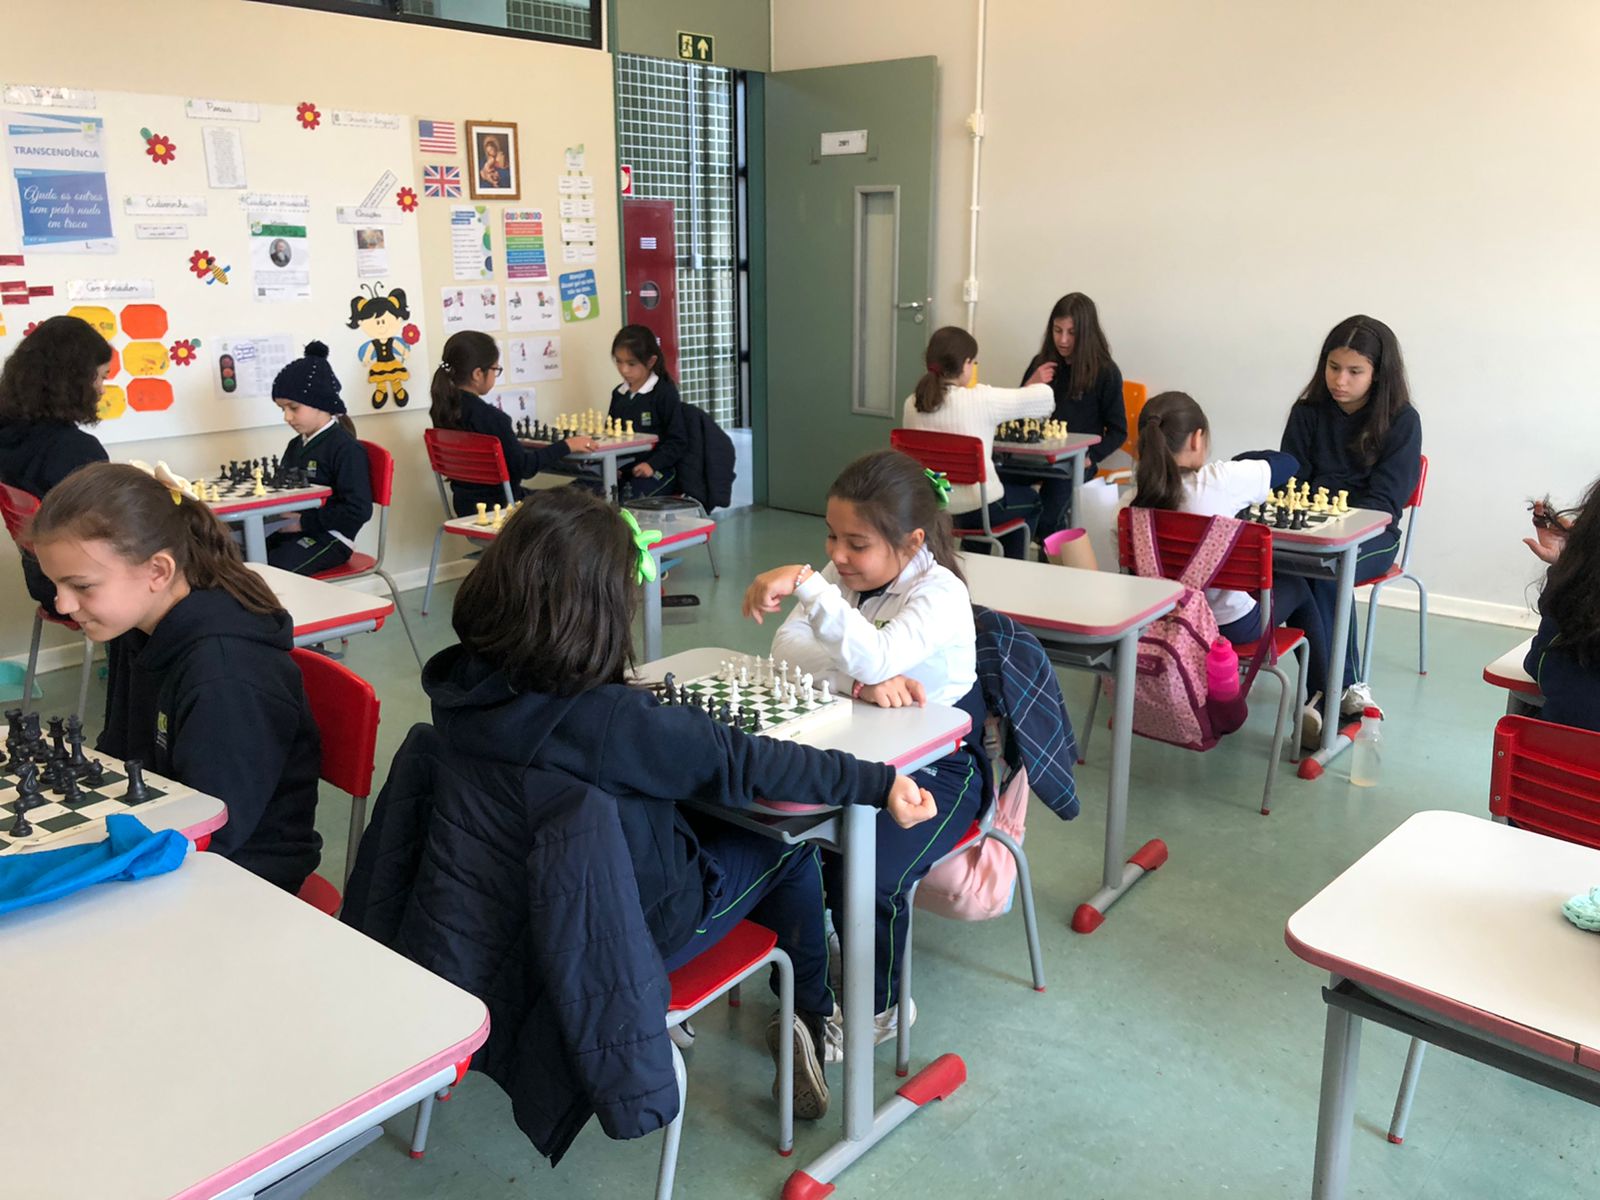 Chess Class na prática desportiva do Integral - Notícias - Colégio do  Bosque Mananciais